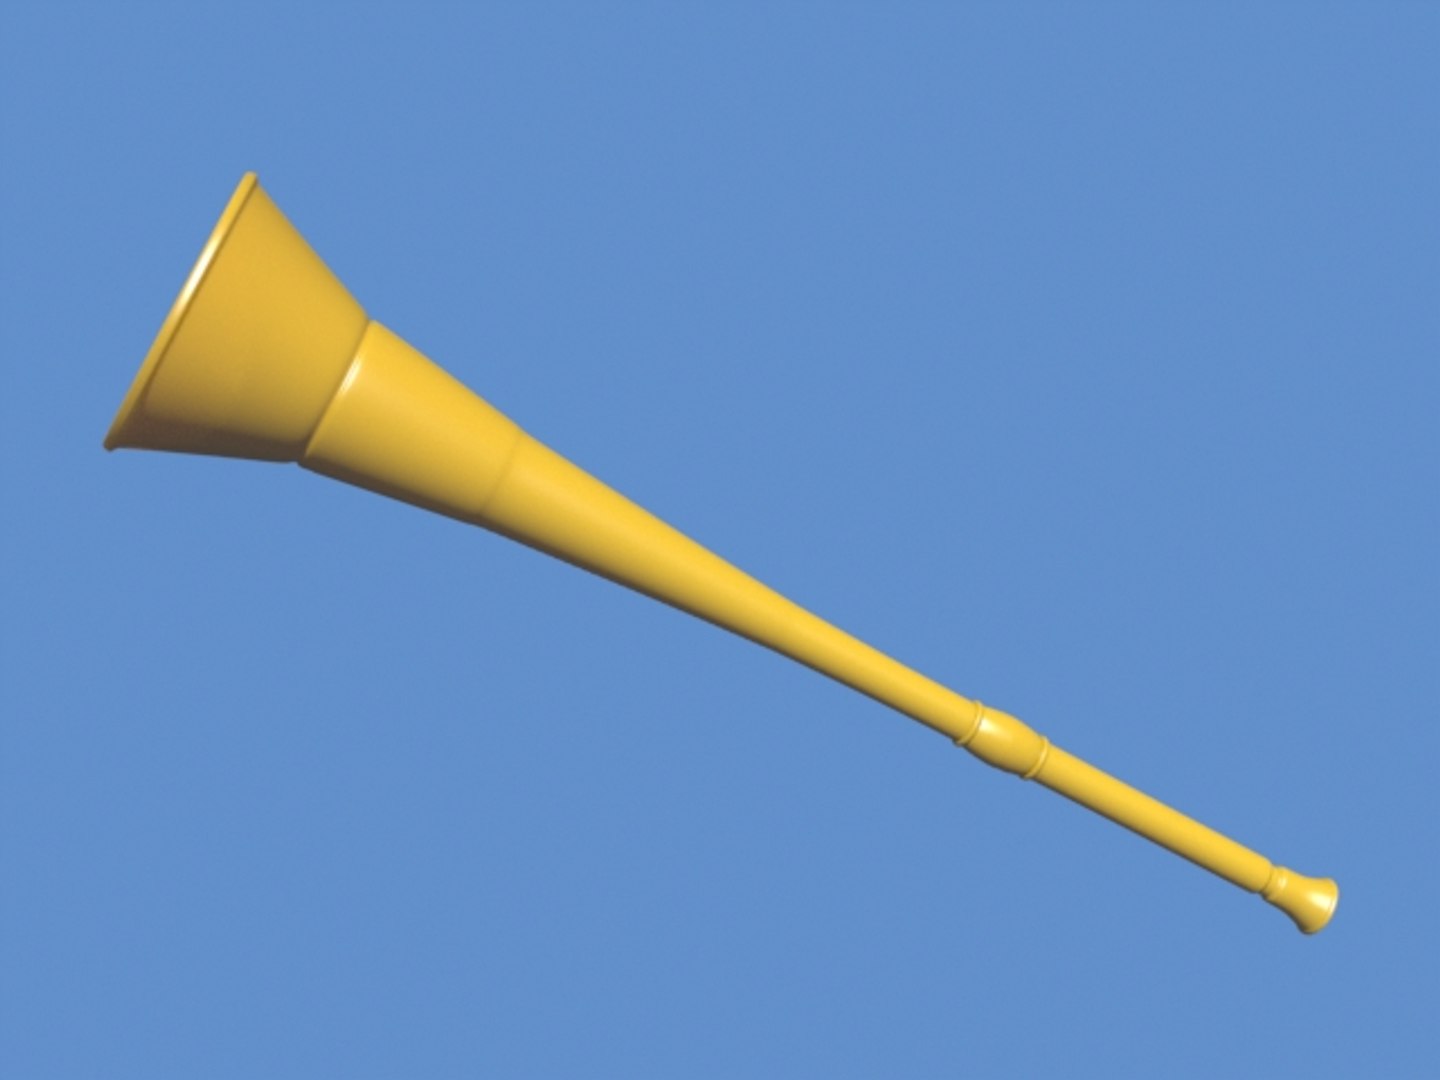 lightwave vuvuzela horn https://p.turbosquid.com/ts-thumb/2t/mBHkCg/di4yZEBB/vuvuzela_render2/jpg/1281267427/1920x1080/fit_q87/0ce25b8f7c5624f1f0300f0897a66e40effc5986/vuvuzela_render2.jpg